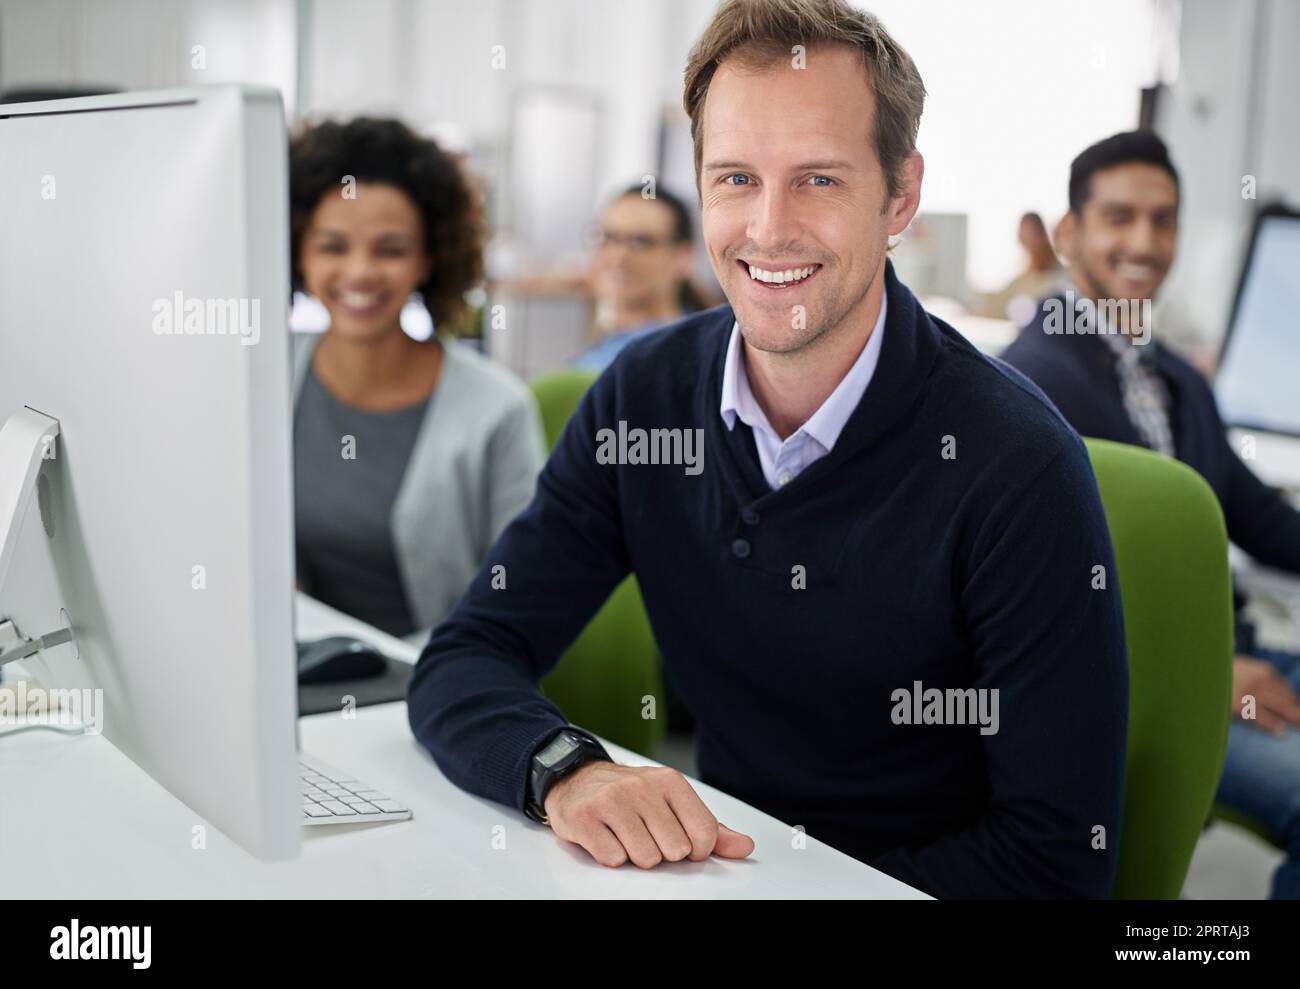 Notre espace de travail a une attitude positive. Portrait d'un homme d'affaires souriant avec ses collègues en arrière-plan Banque D'Images